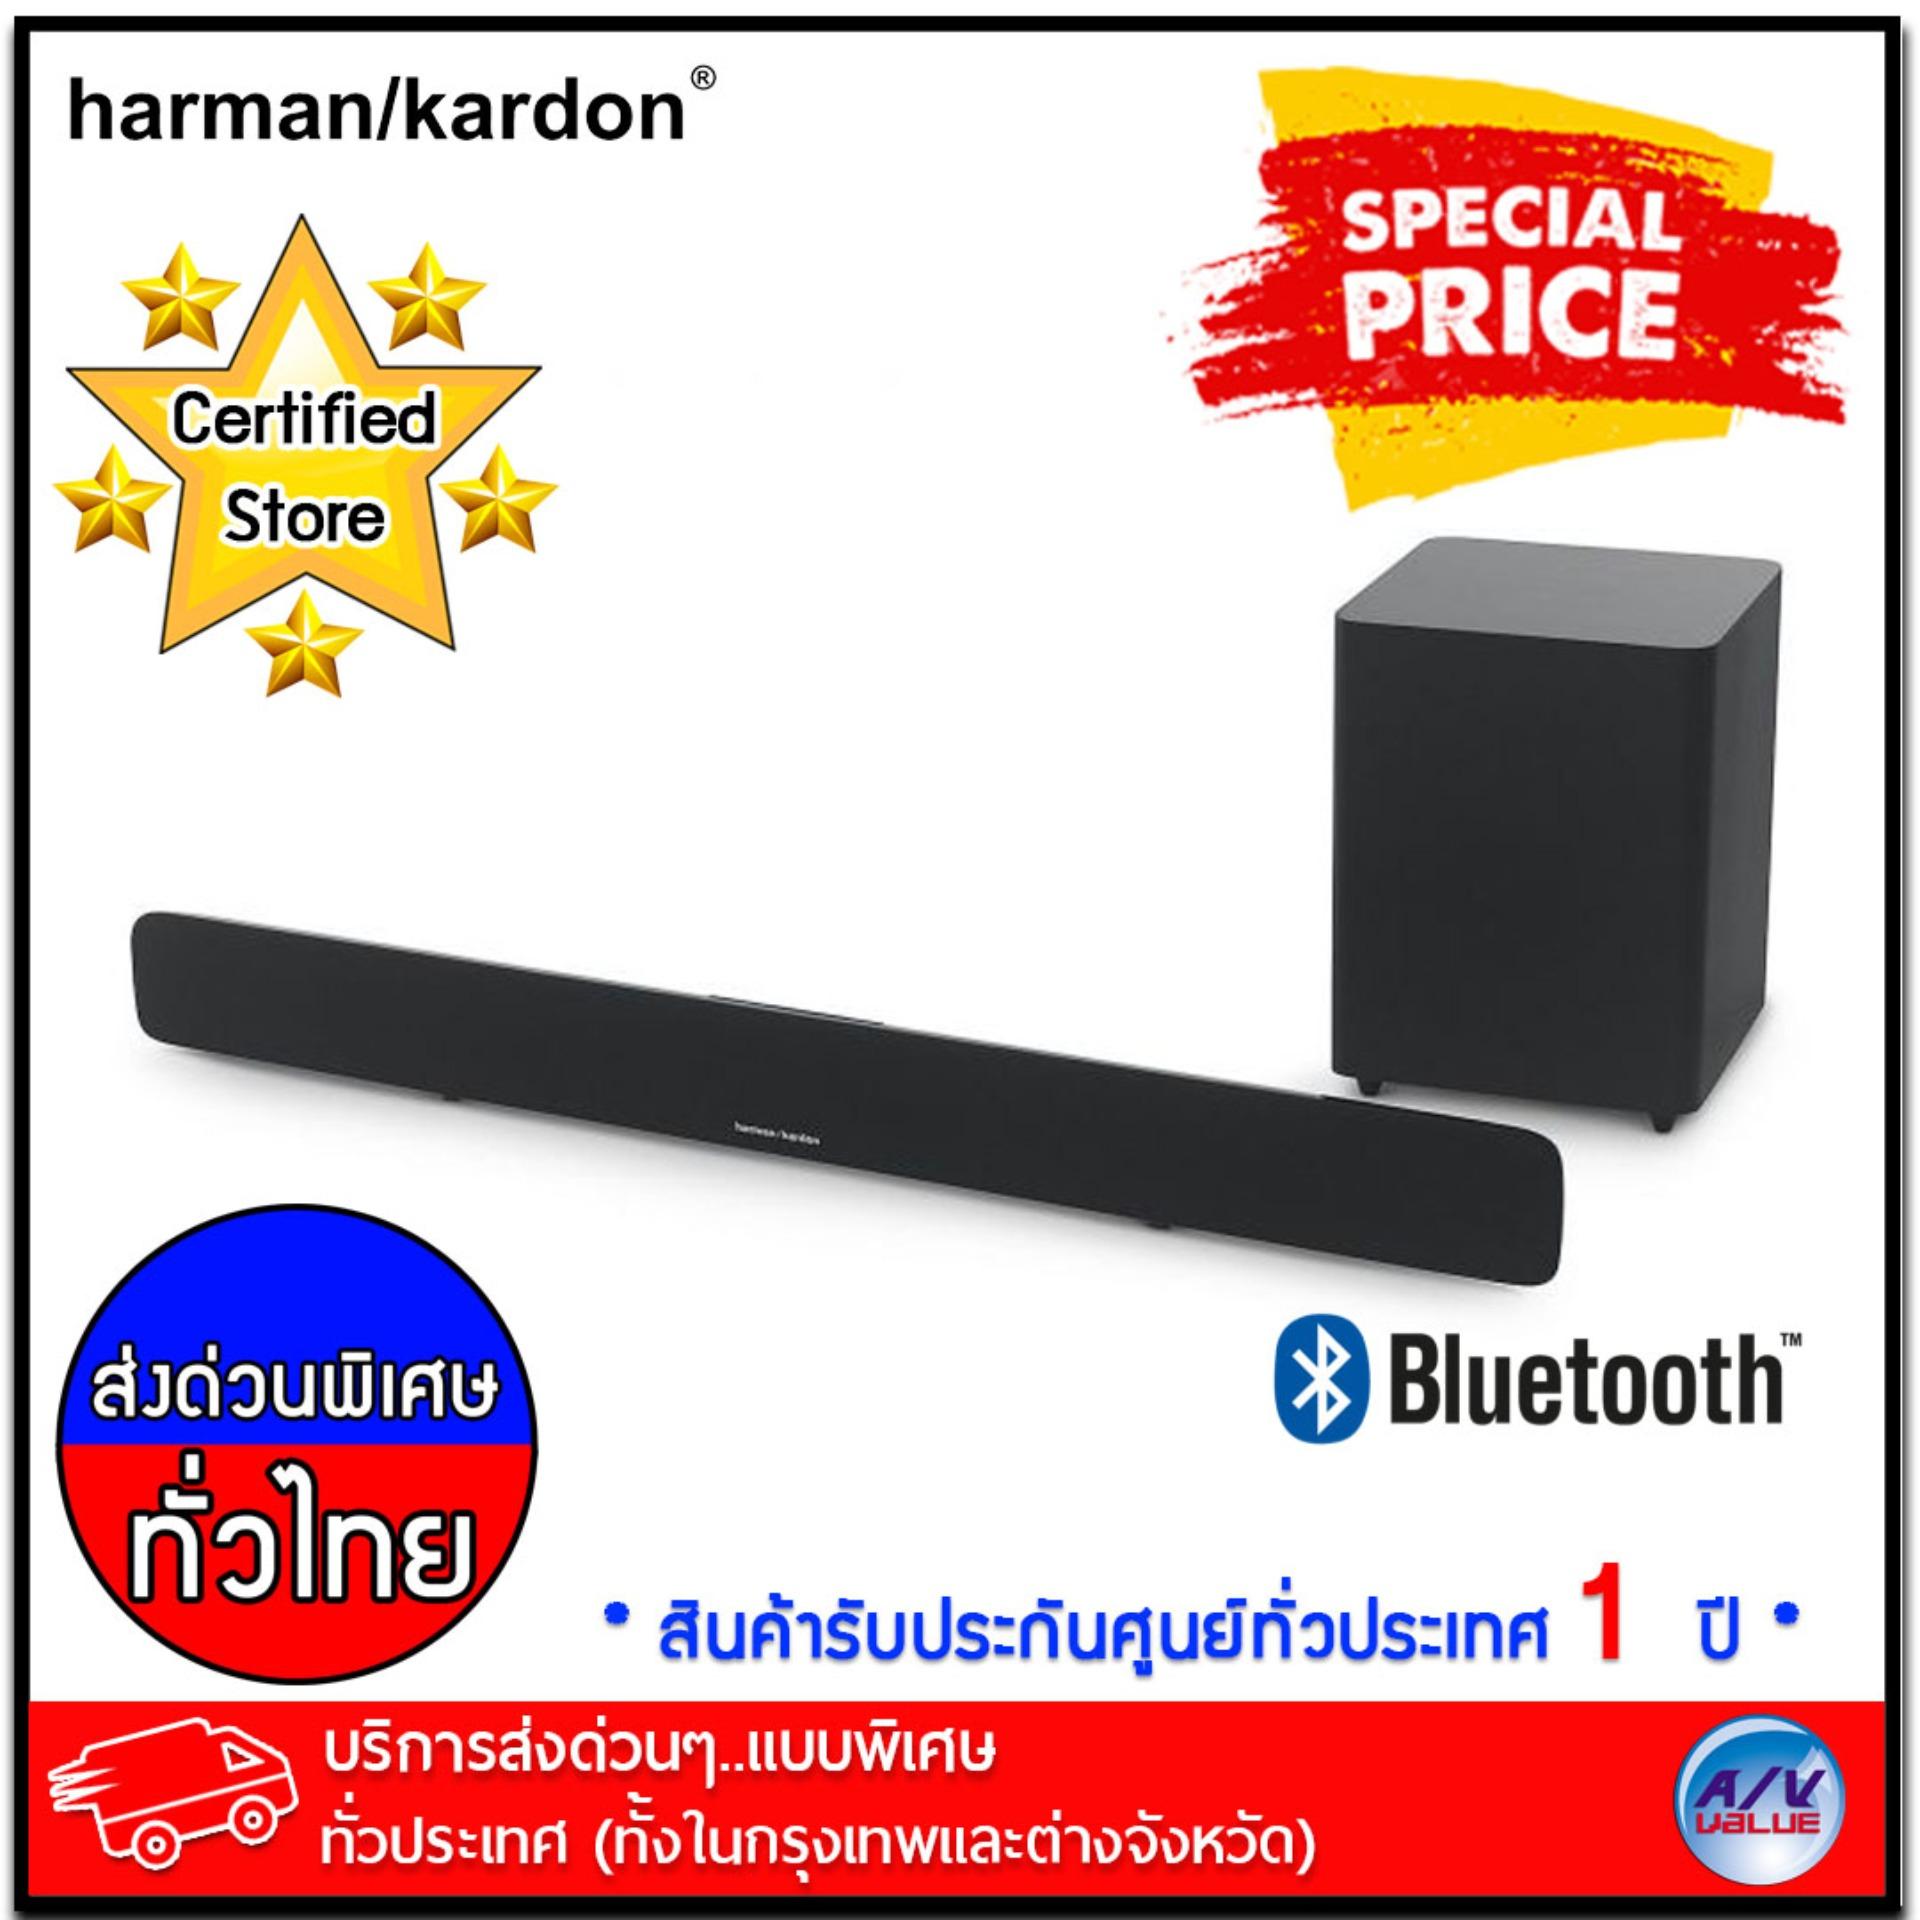 การใช้งาน  พัทลุง Harman Kardon SB 20 Advanced soundbar with Bluetooth and powerful wireless subwoofer (HK SB20) *** บริการส่งด่วนแบบพิเศษ!ทั่วประเทศ (ทั้งในกรุงเทพและต่างจังหวัด)***